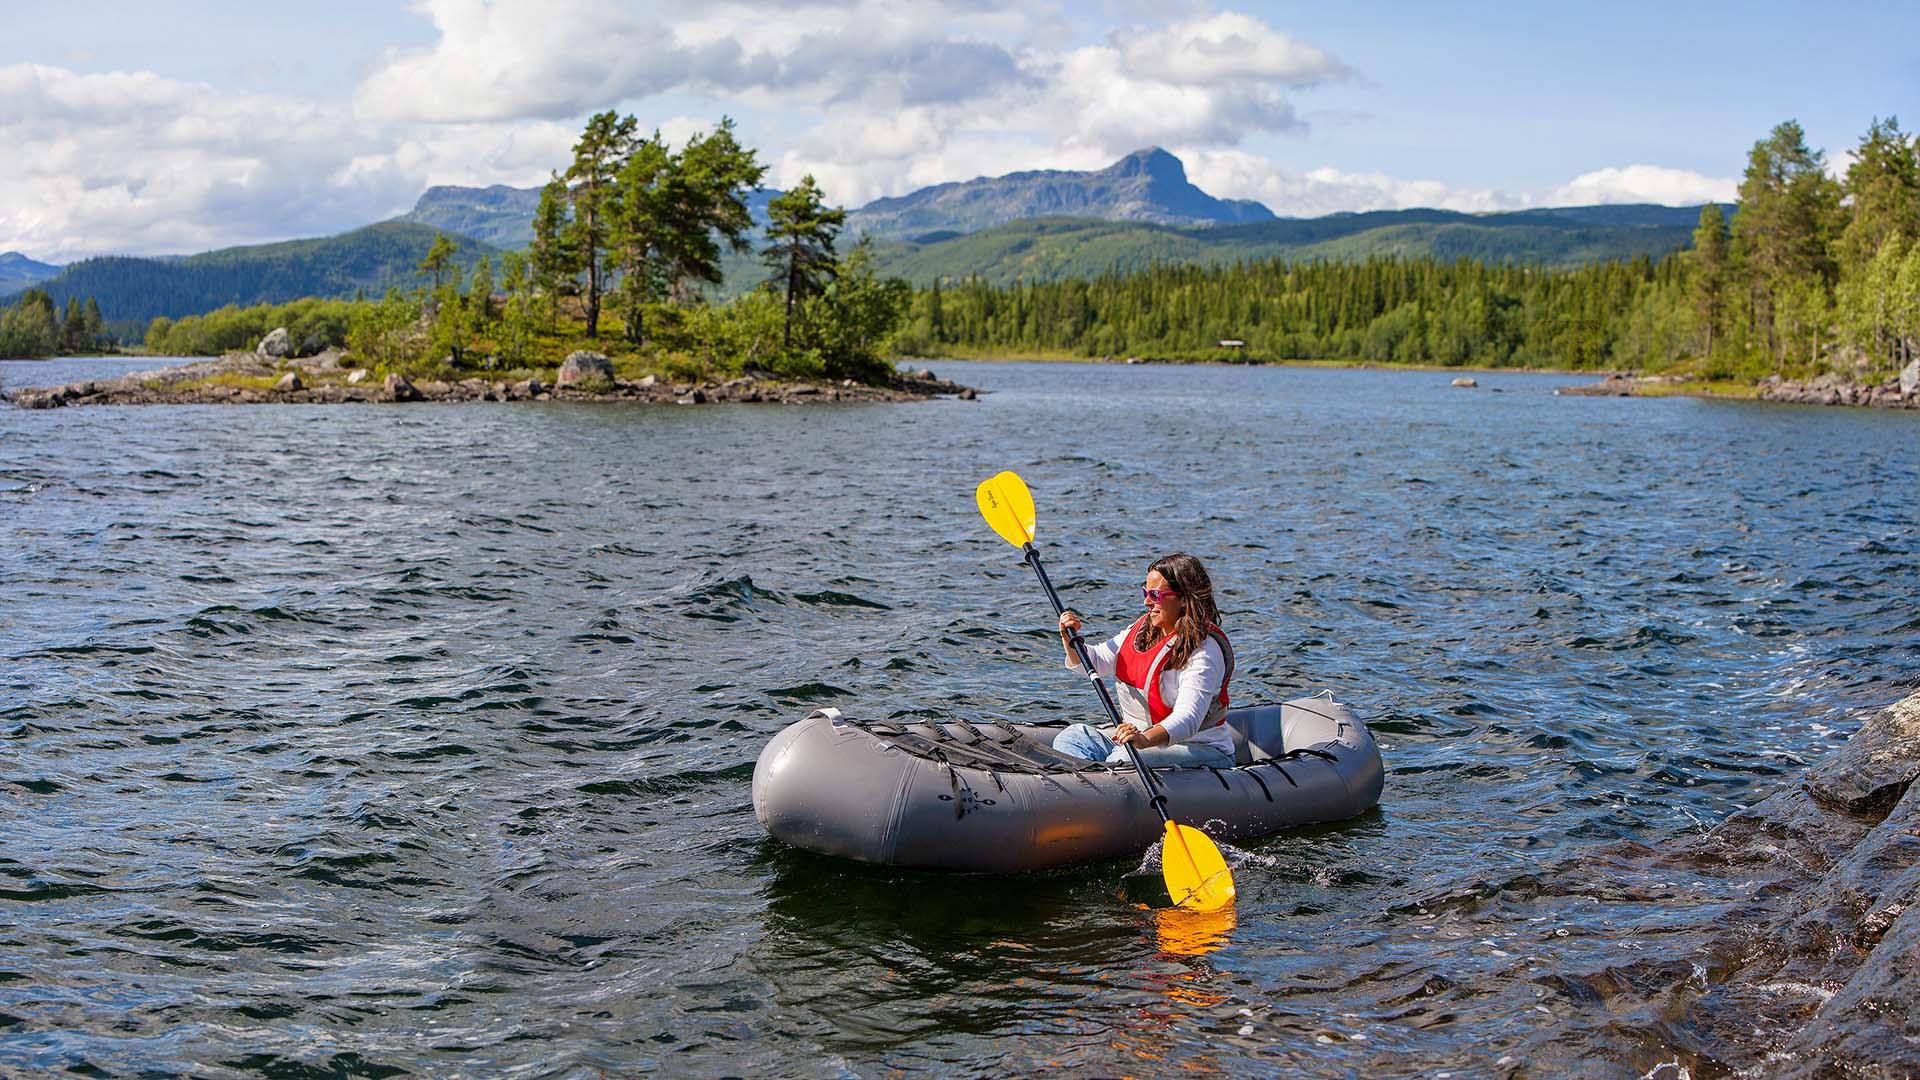 Eine Person in einem Schlauchboot mit gelbem Paddel auf einem Bergsee. Im Hintergrund eine kleine Insel mit Kiefern und ein Berg.